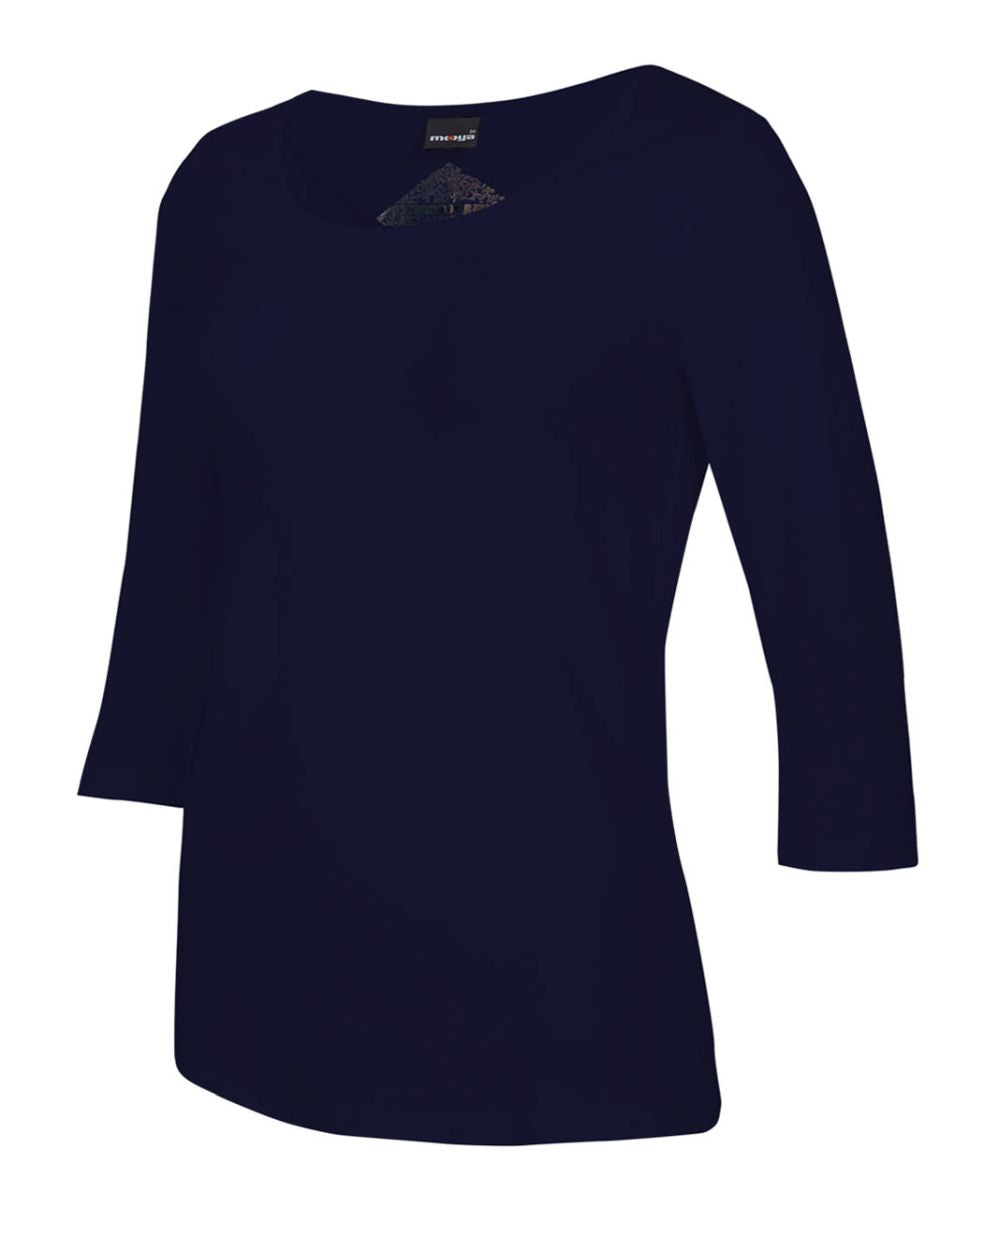 Damen-Shirt Angela, 3/4-Arm, Rundhalsausschnitt, Farbe Marine